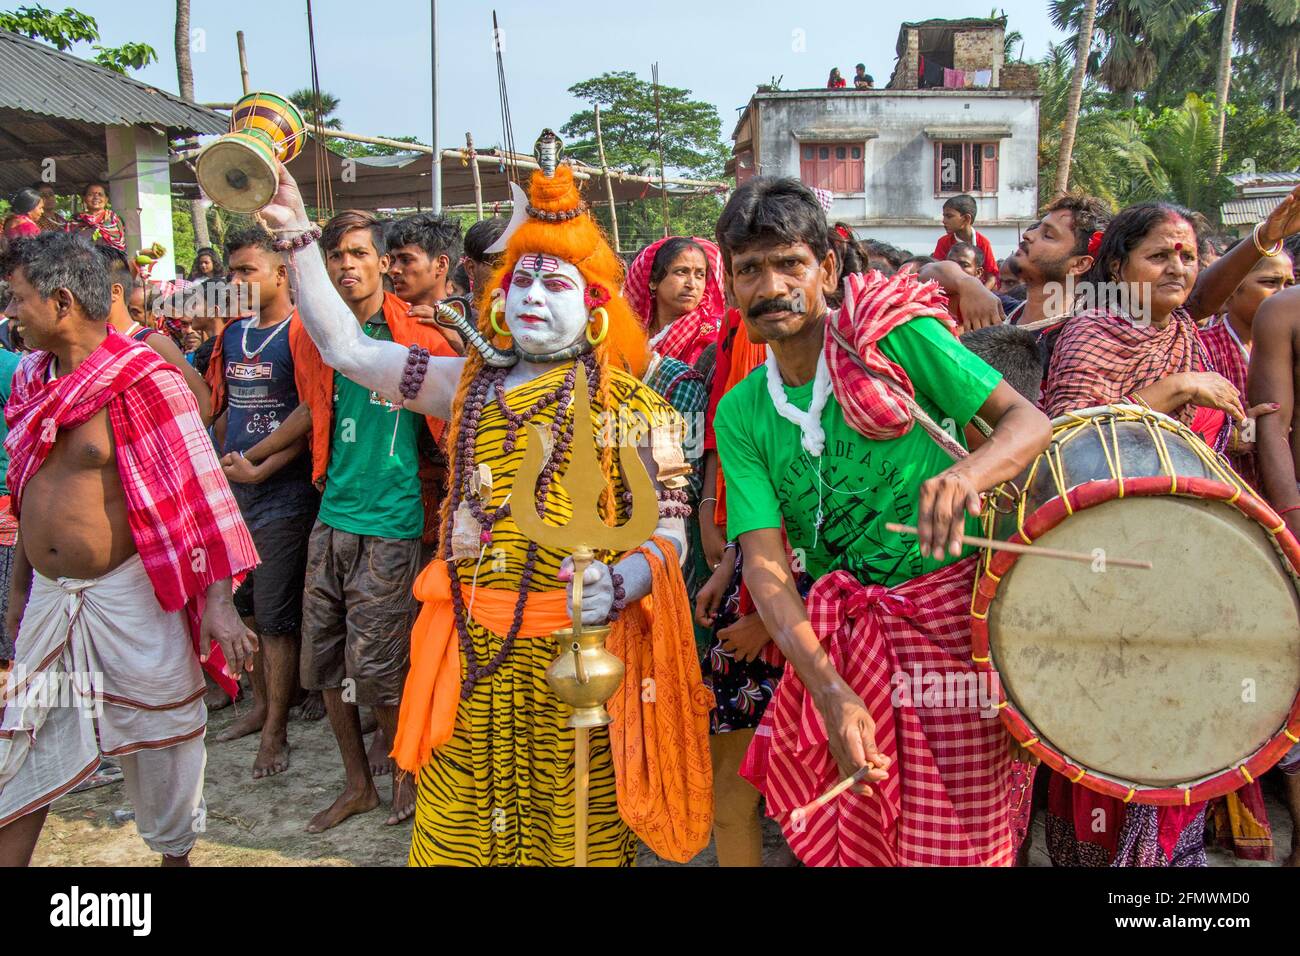 Gajan est un festival rural du Bengal.dans ce spectacle, une personne à multiples facettes dans le guise de Dieu Shiva est vu. Banque D'Images